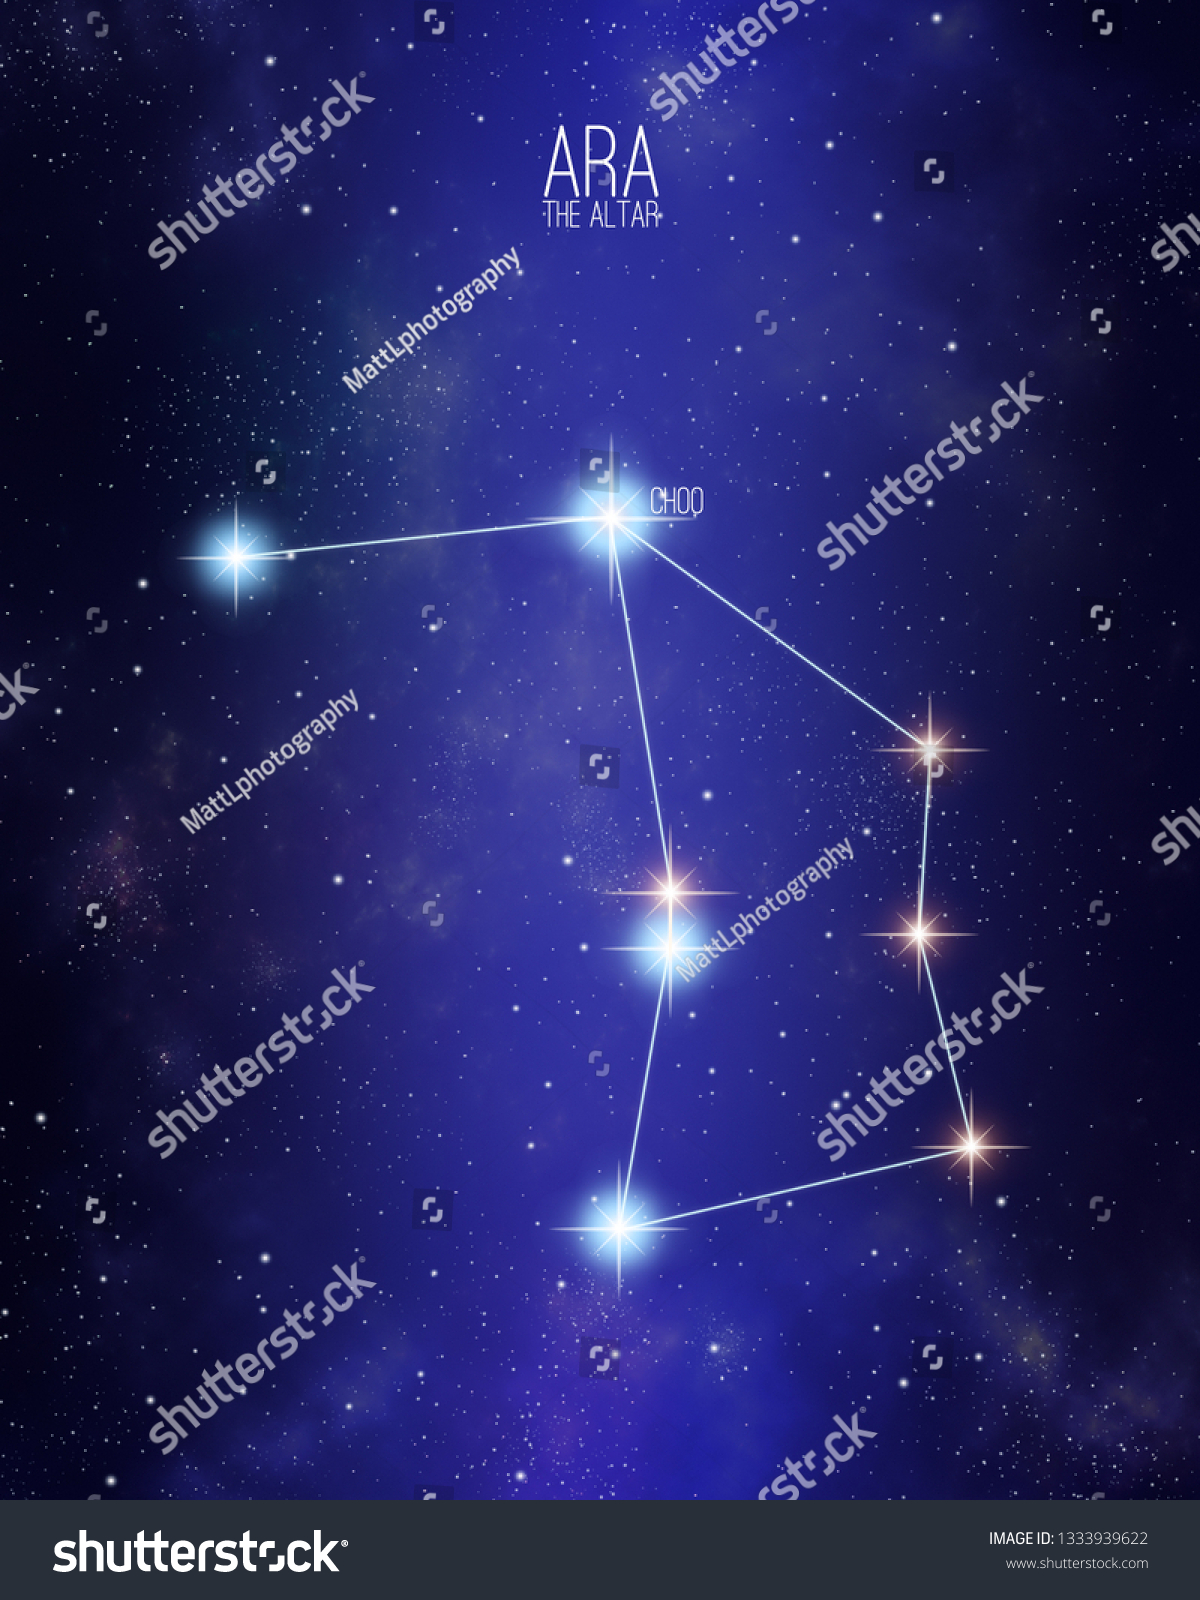 Nægte have tillid værtinde Ara Altar Constellation On Starry Space Stock-illustration 1333939622